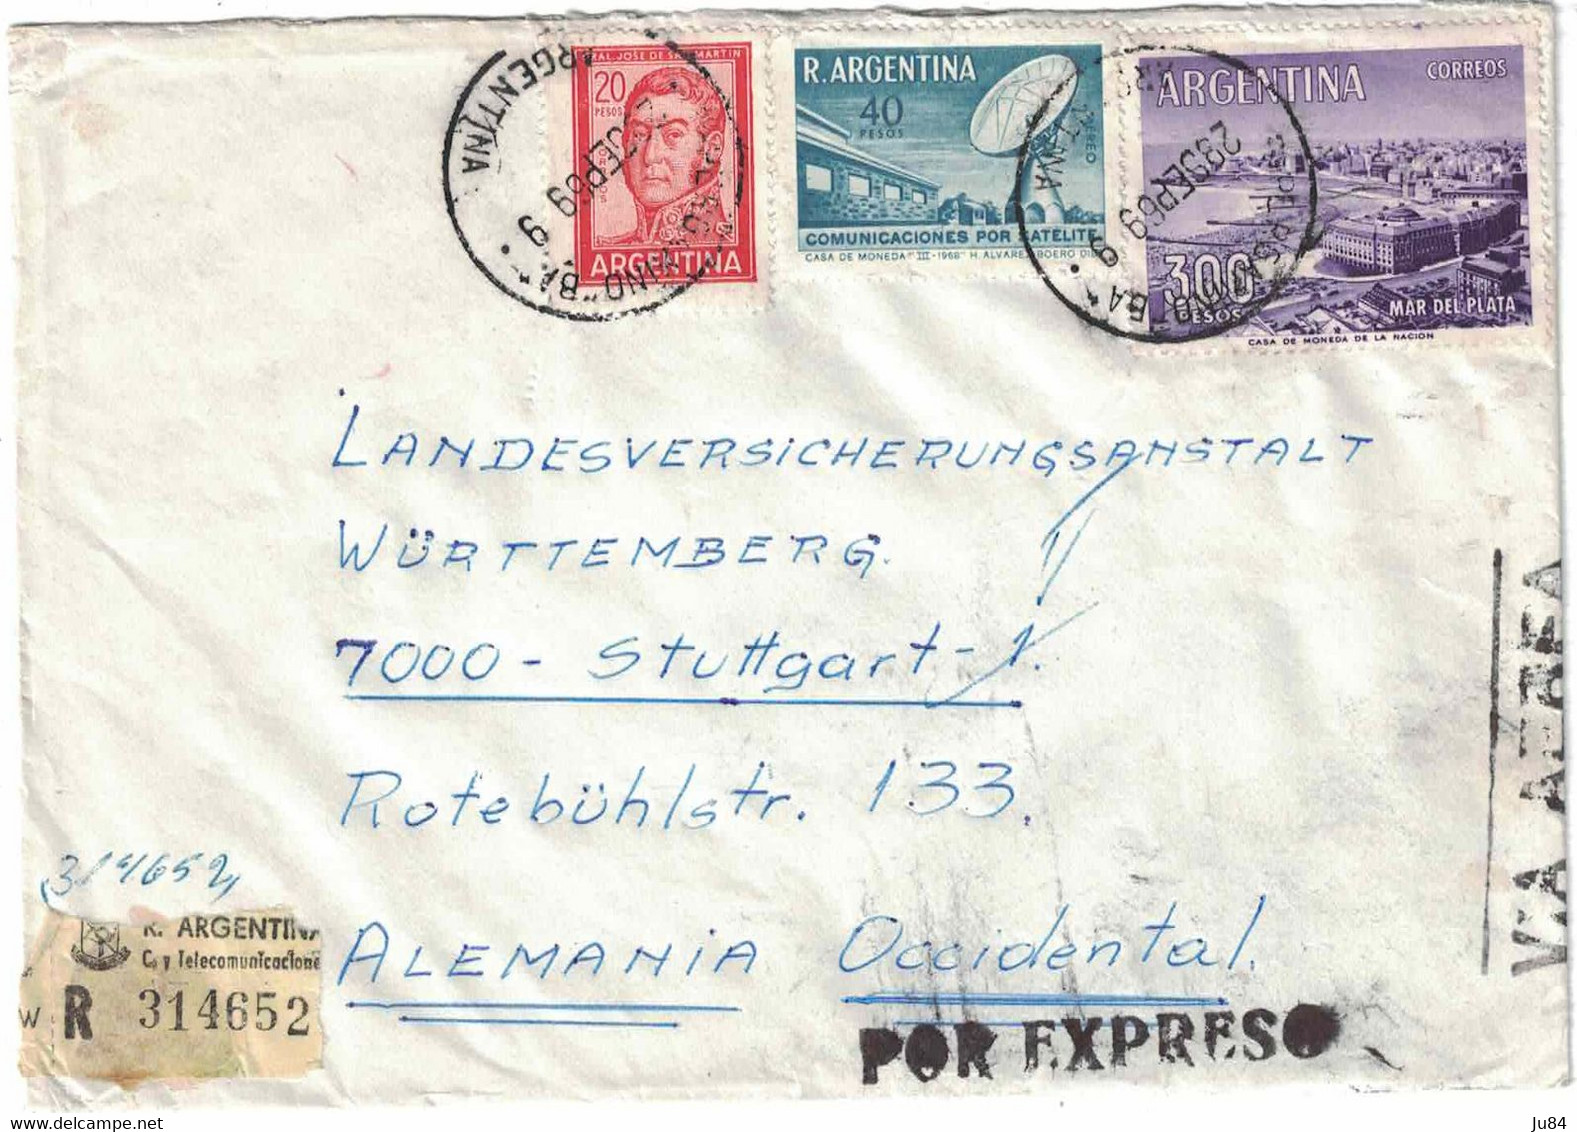 Argentine - Pergamino - Lettre Recommandée Express - Pour L'Allemagne - Stuttgart - 28 Septembre 1969 - Oblitérés